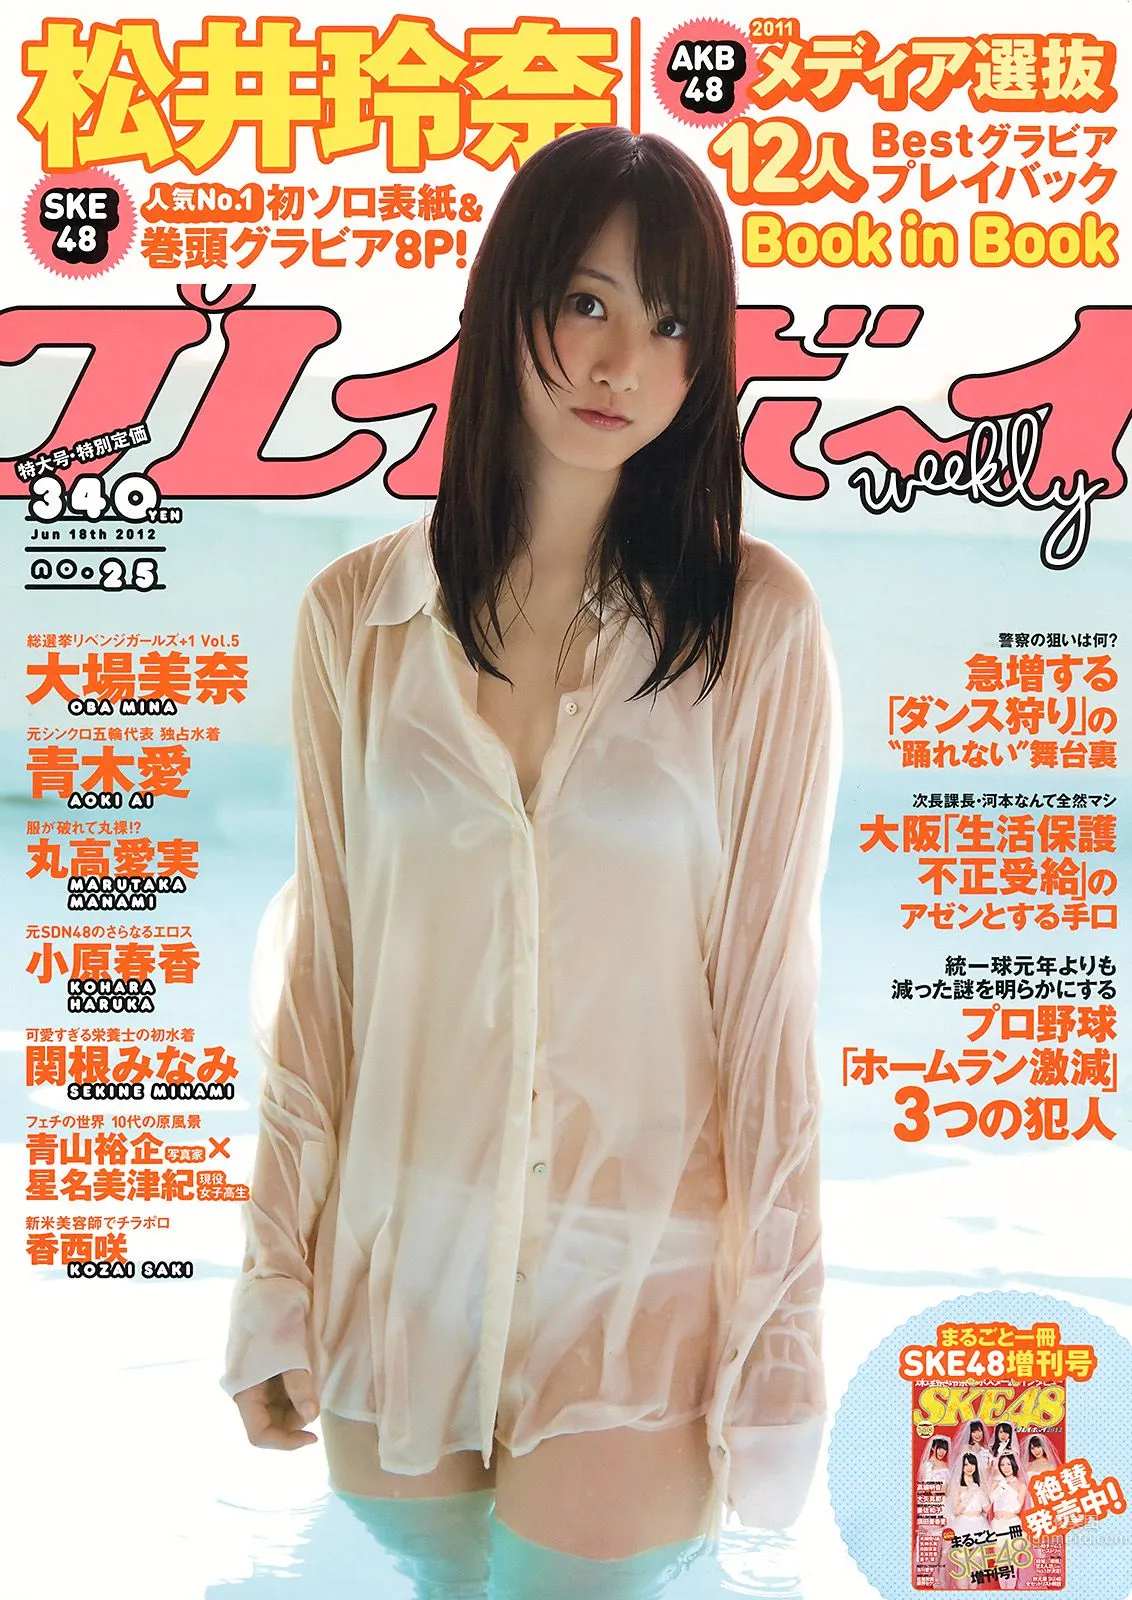 松井玲奈 大場美奈 丸高愛実 小原春香 AKB48 青木爱 香西咲 [Weekly Playboy] 2012年No.25 写真杂志1